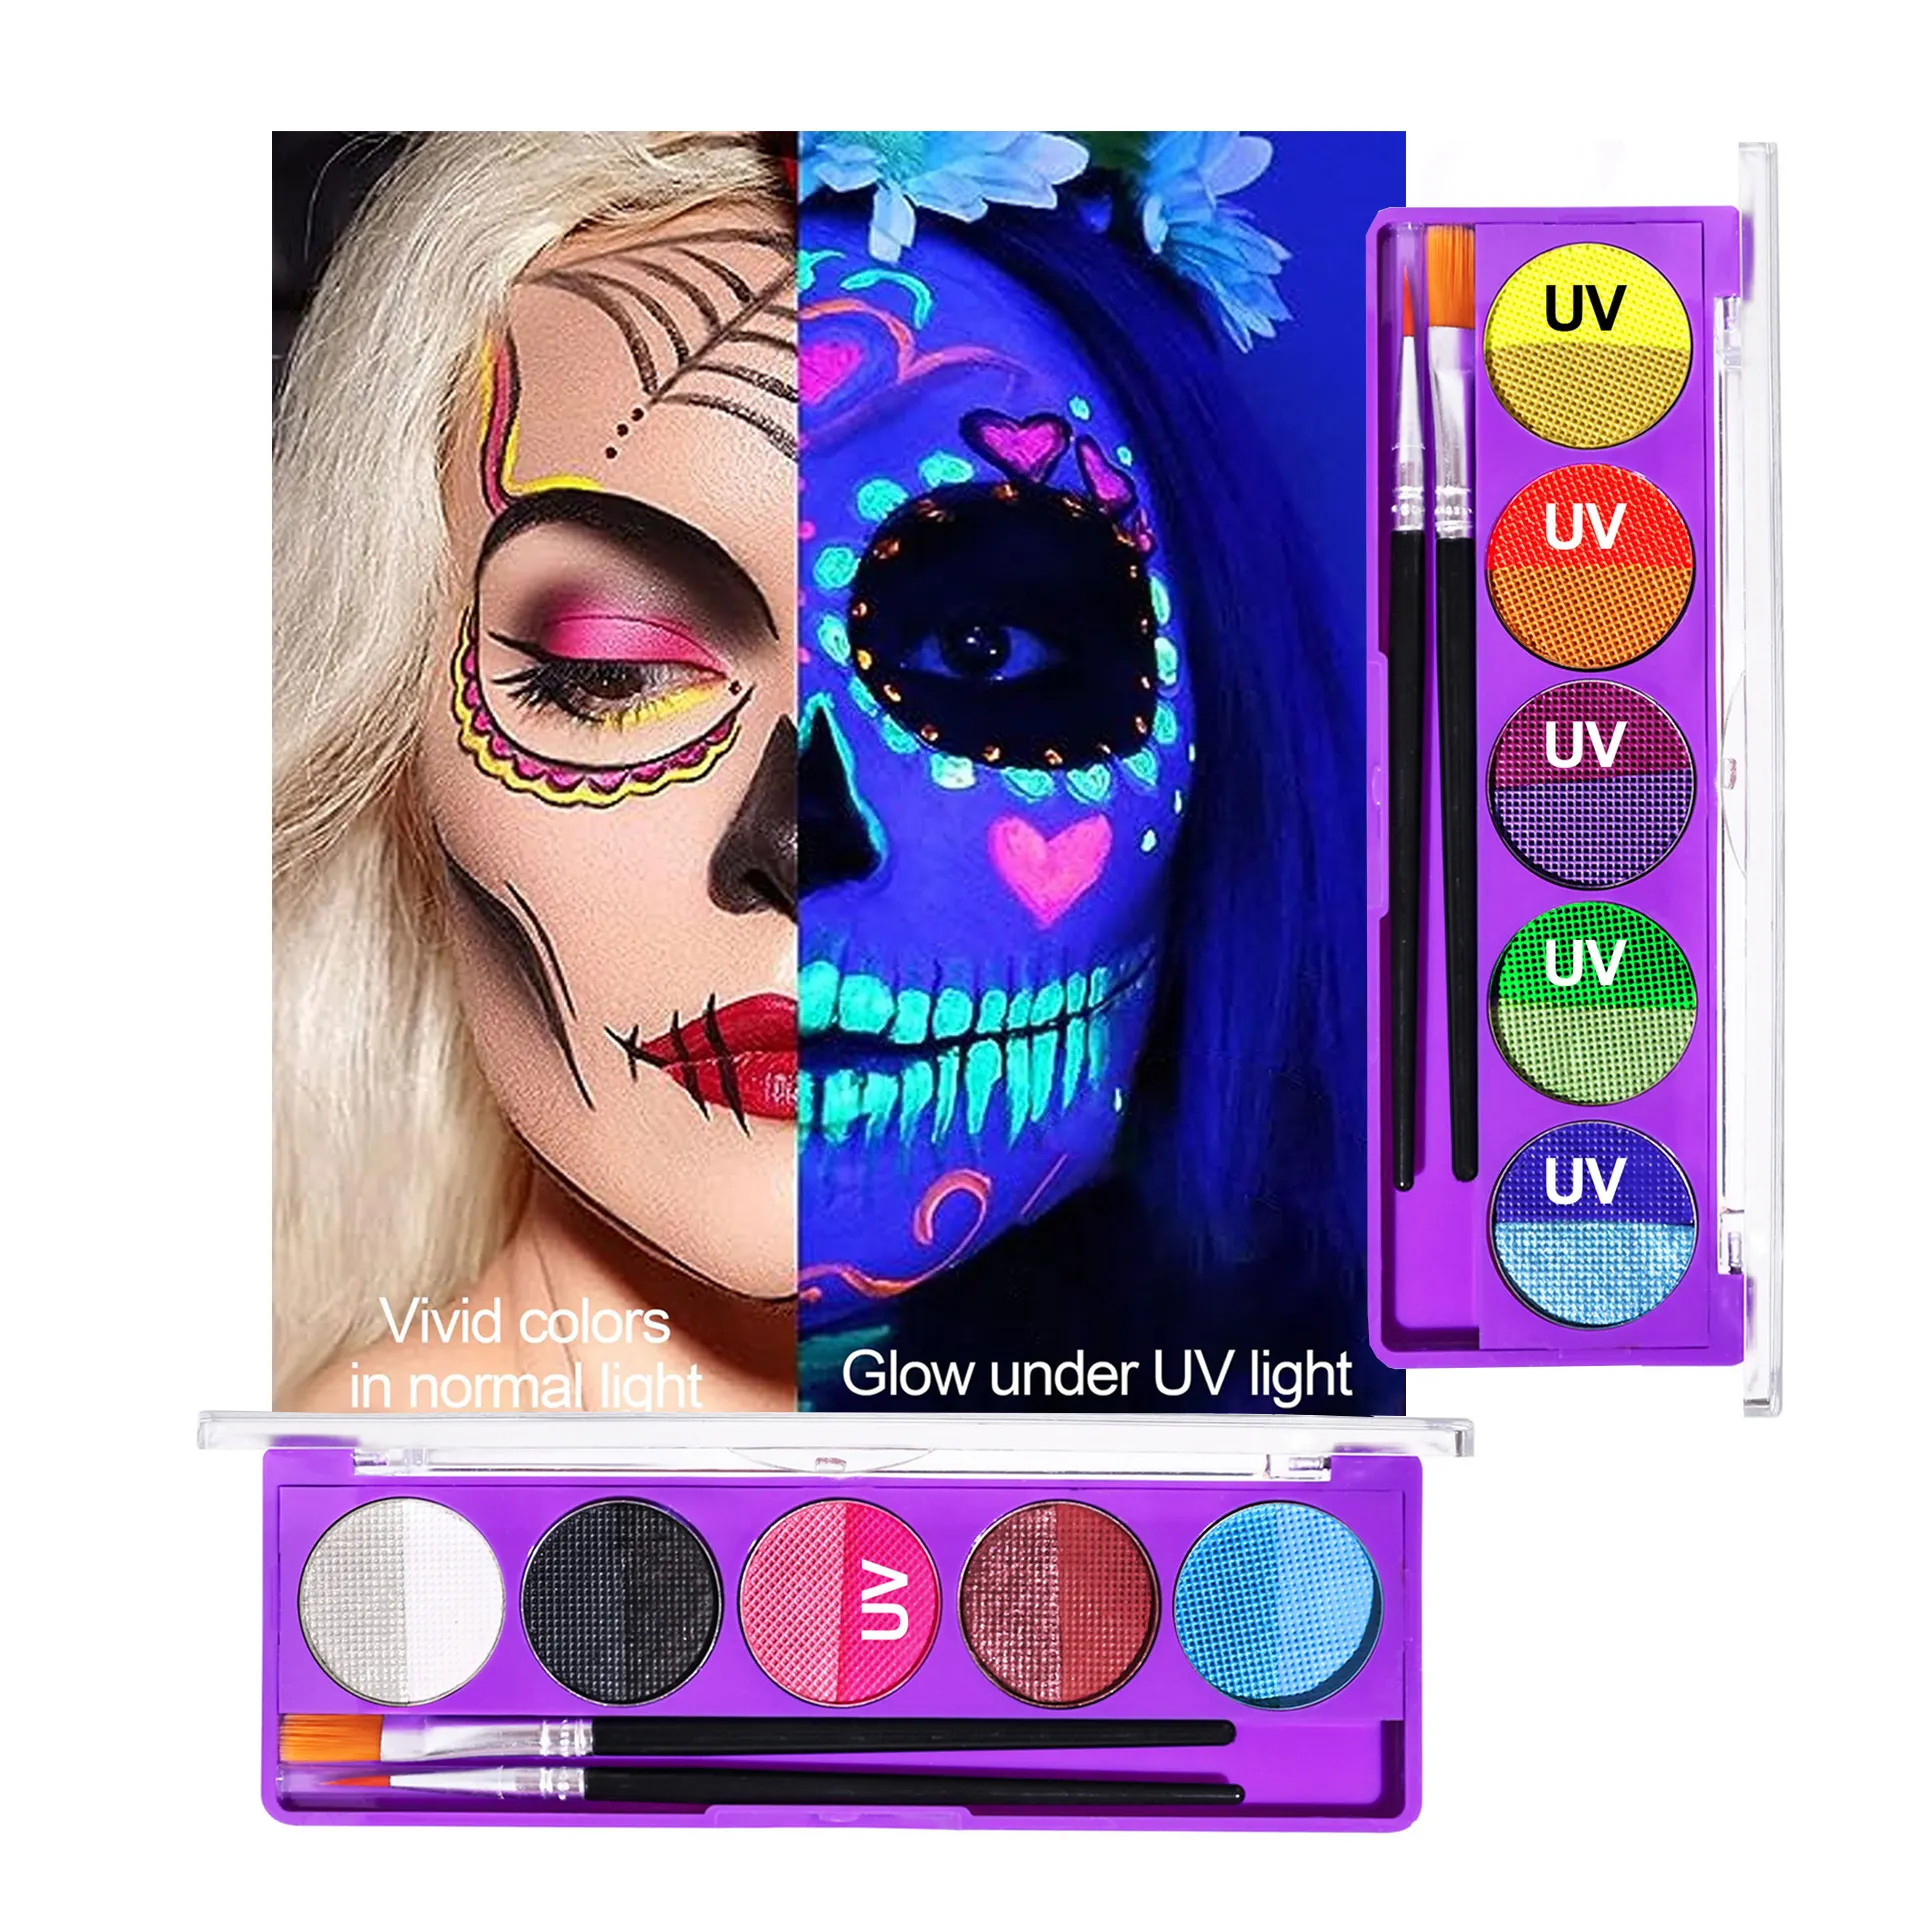 Art Makeup Körperfarbe Palette Kit Glow In The Dark Helles Set Neon/UV/Fluor zierende Creme Halloween Wasser basierte Gesichts bemalung Set